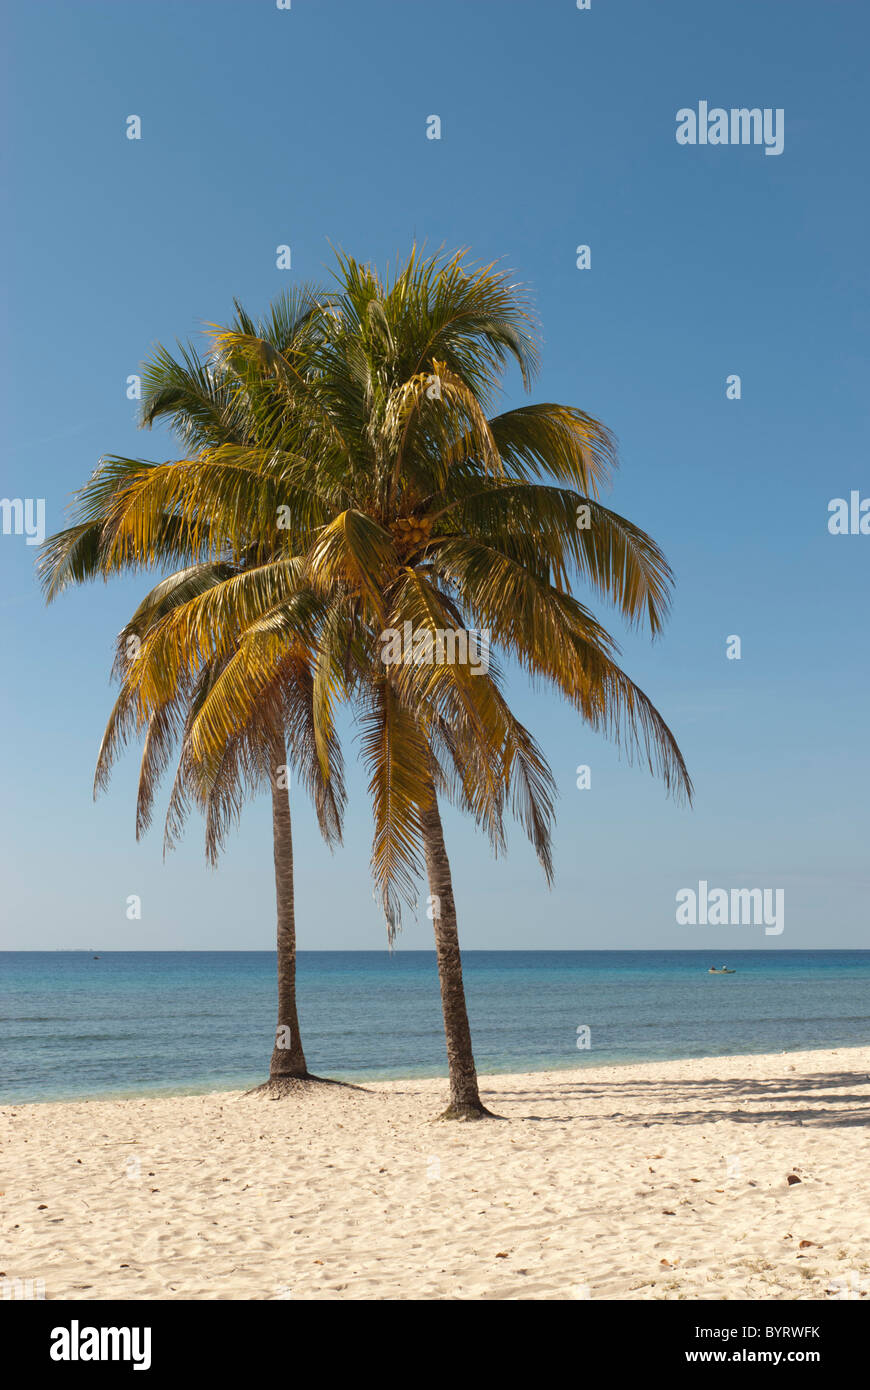 Playa Giron. Plage des Caraïbes avec palmiers et sable blanc, de Cuba, des Caraïbes Banque D'Images